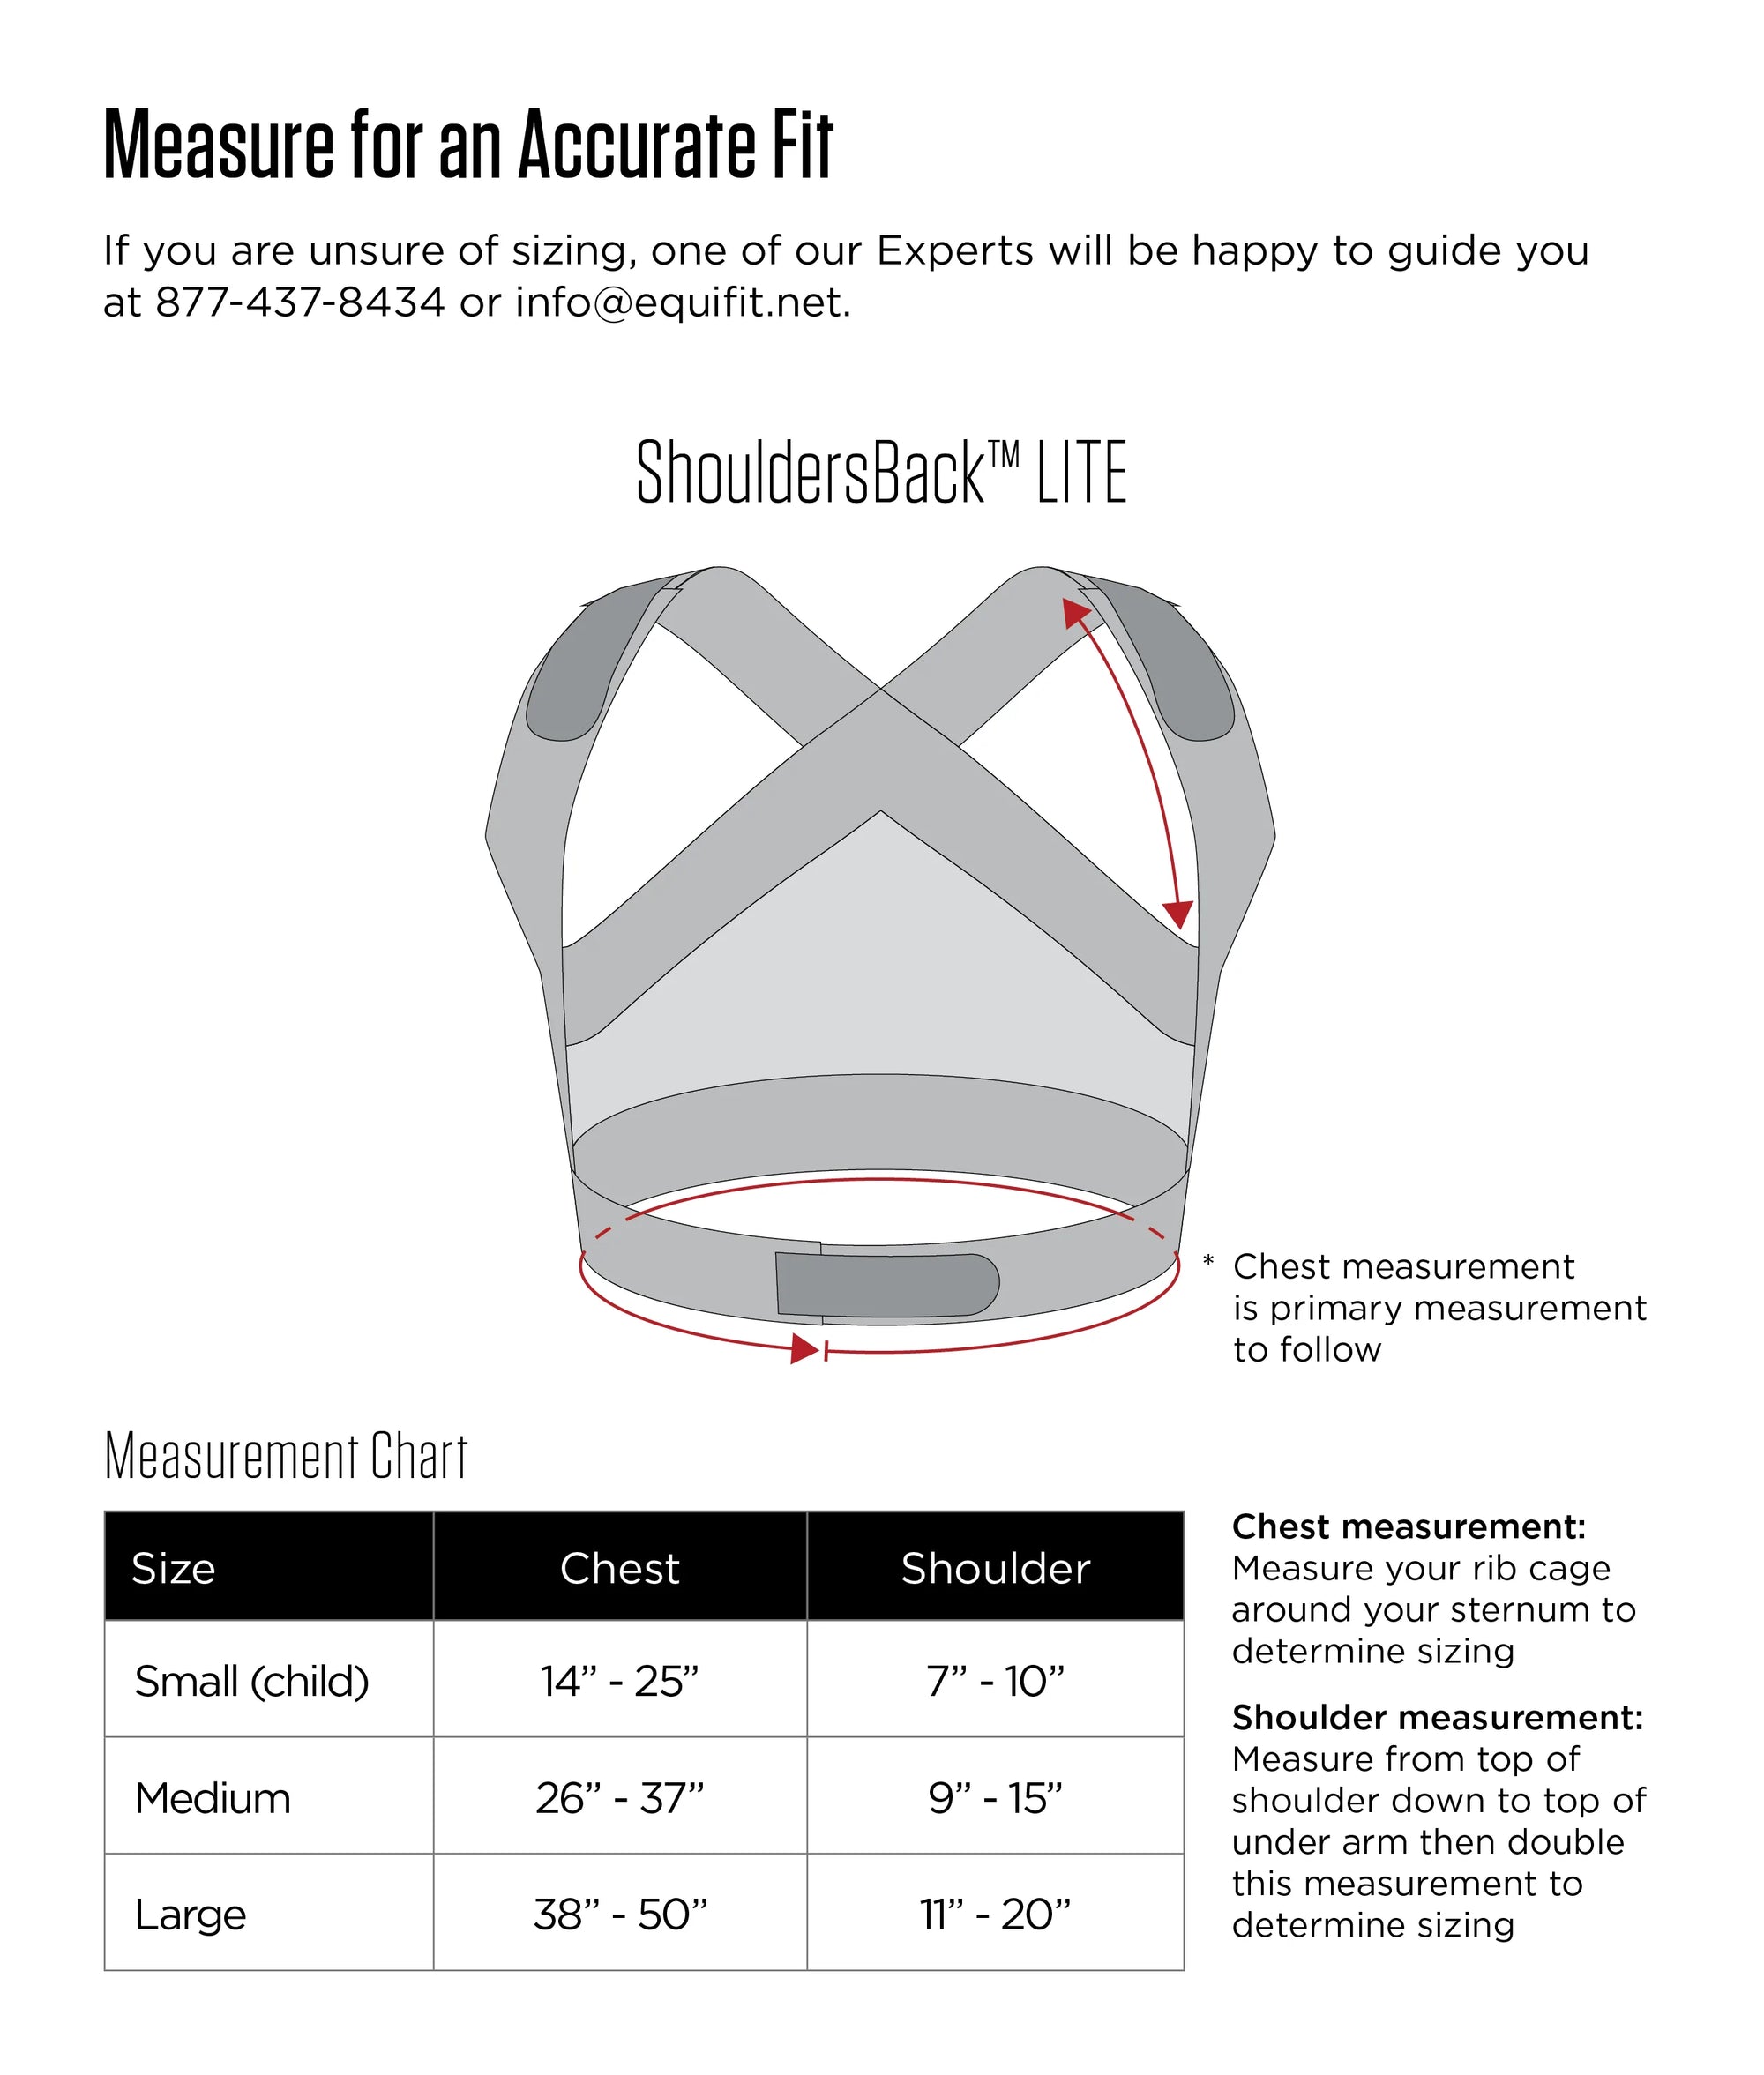 ShouldersBack® Lite - EquiFit